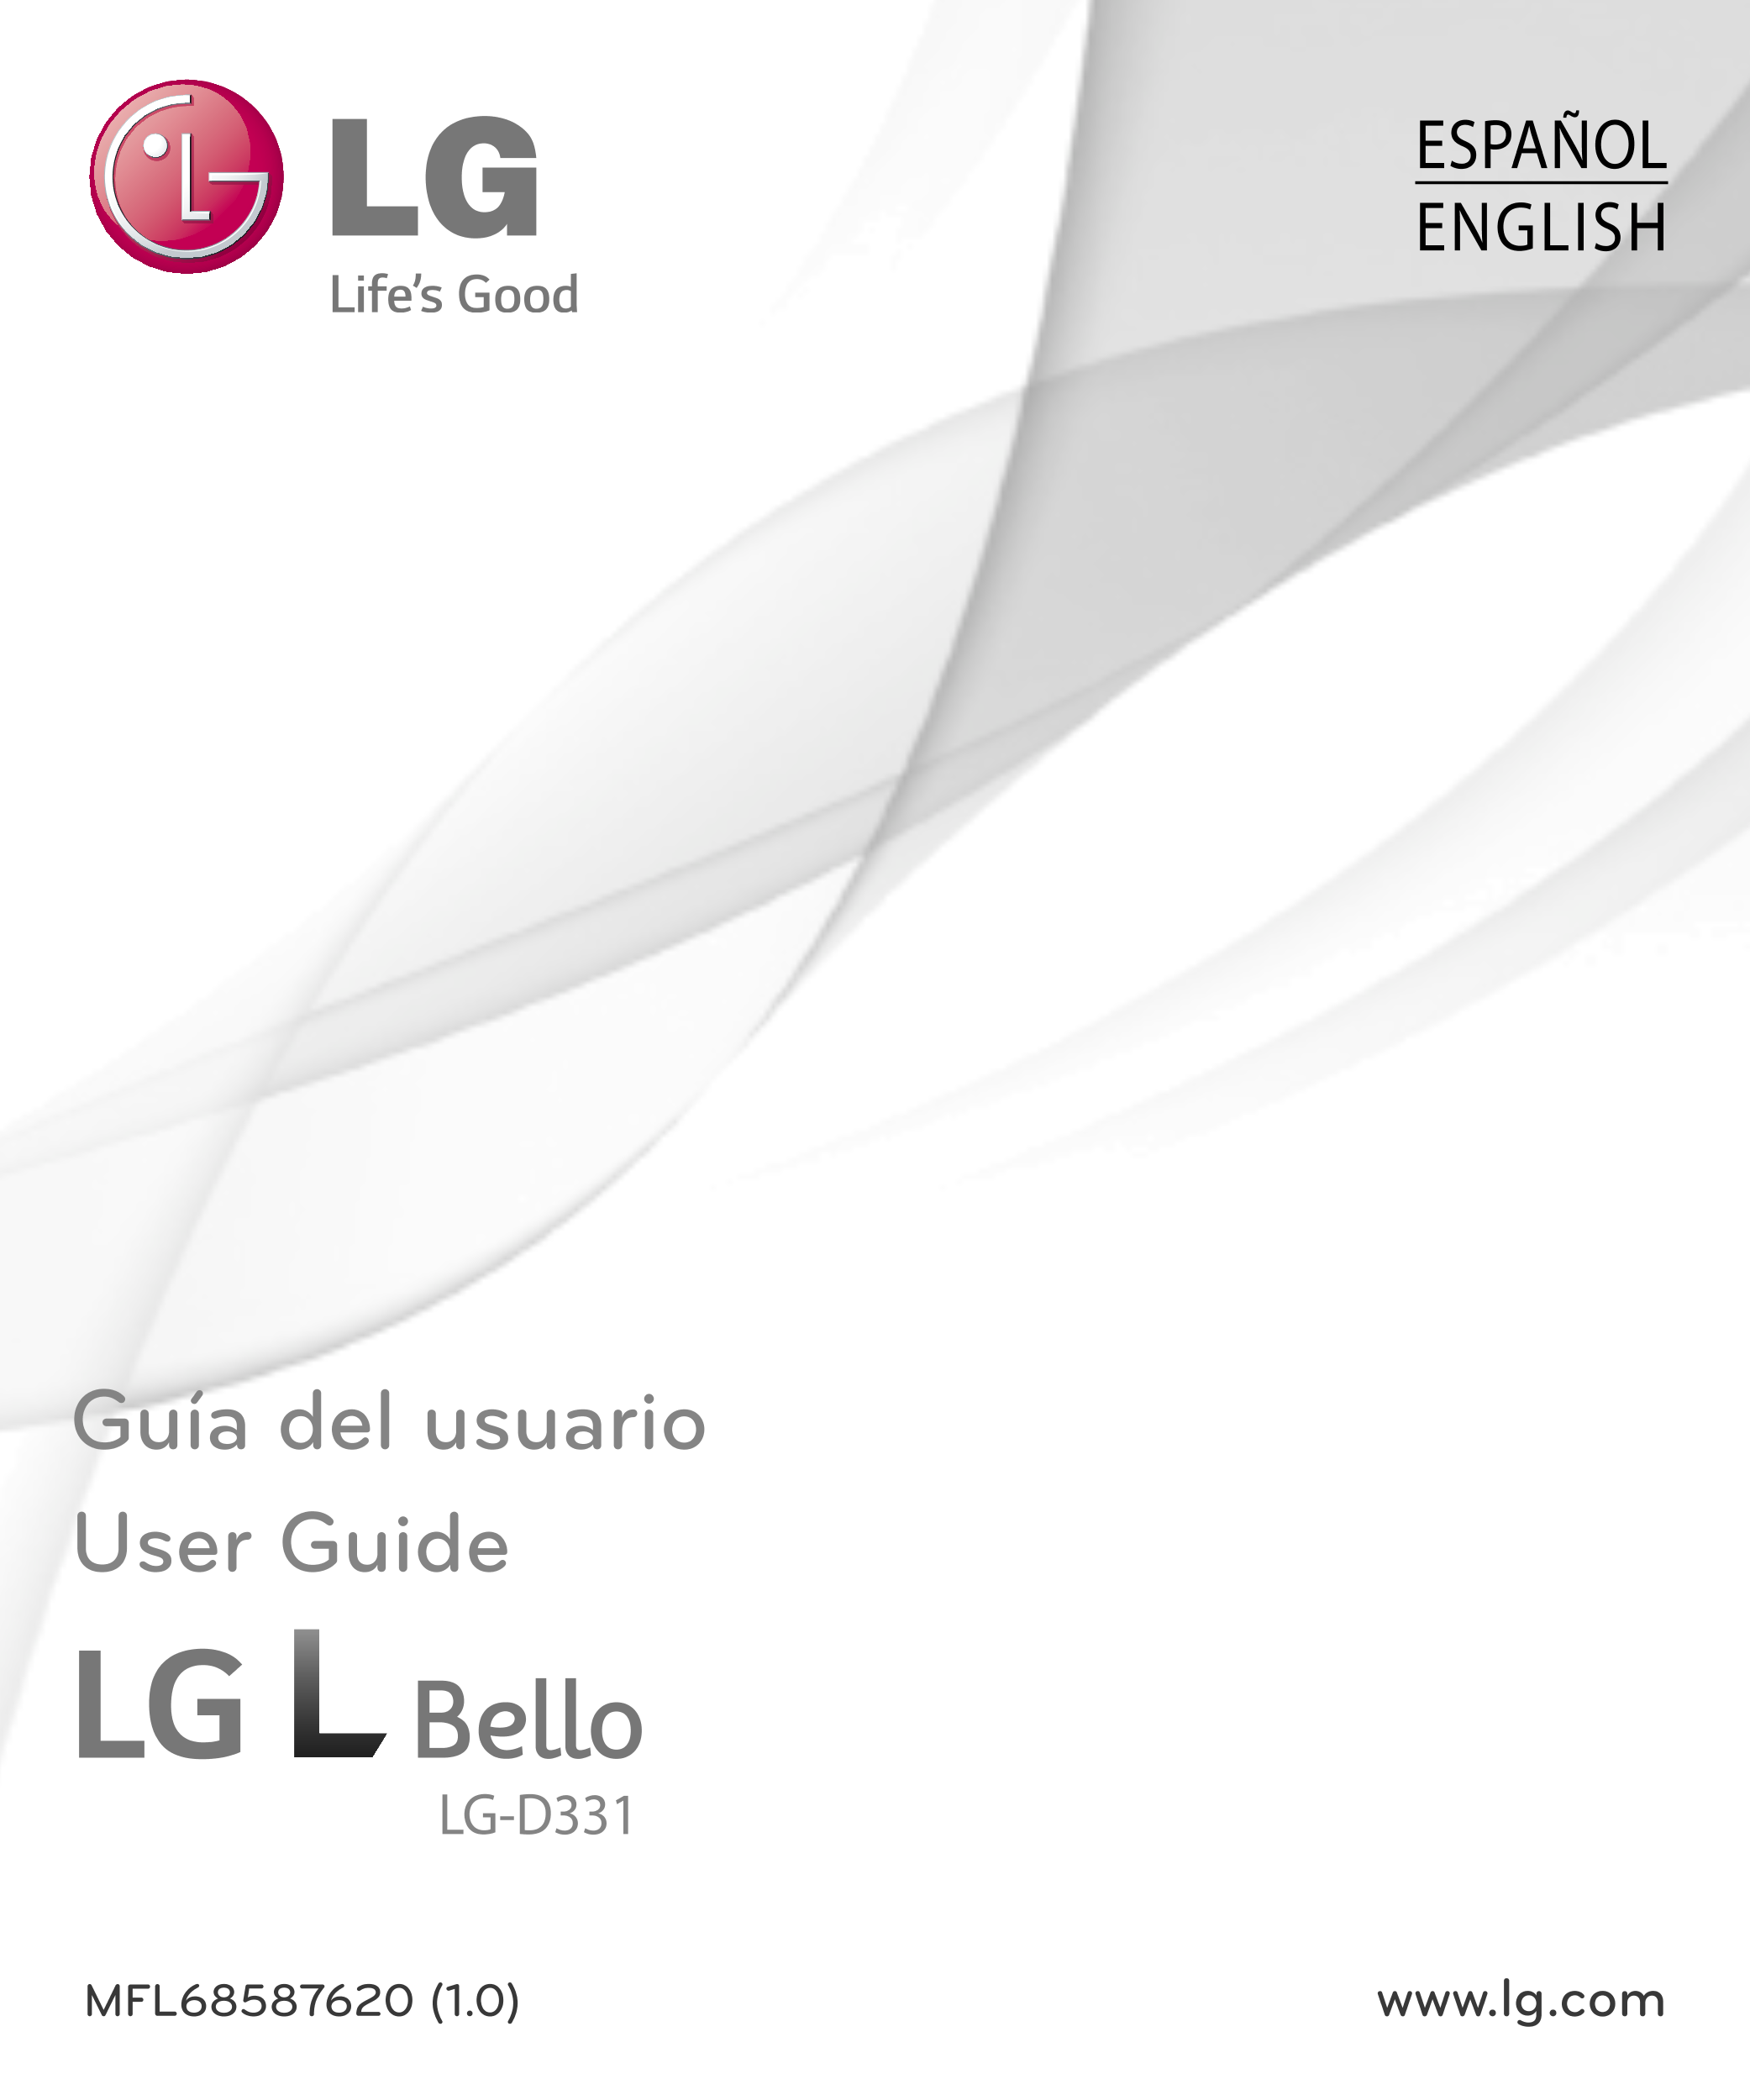 ESPAÑOL
ENGLISH
Guía del usuario
User Guide
LG-D331
MFL68587620 (1.0)  www.lg.com